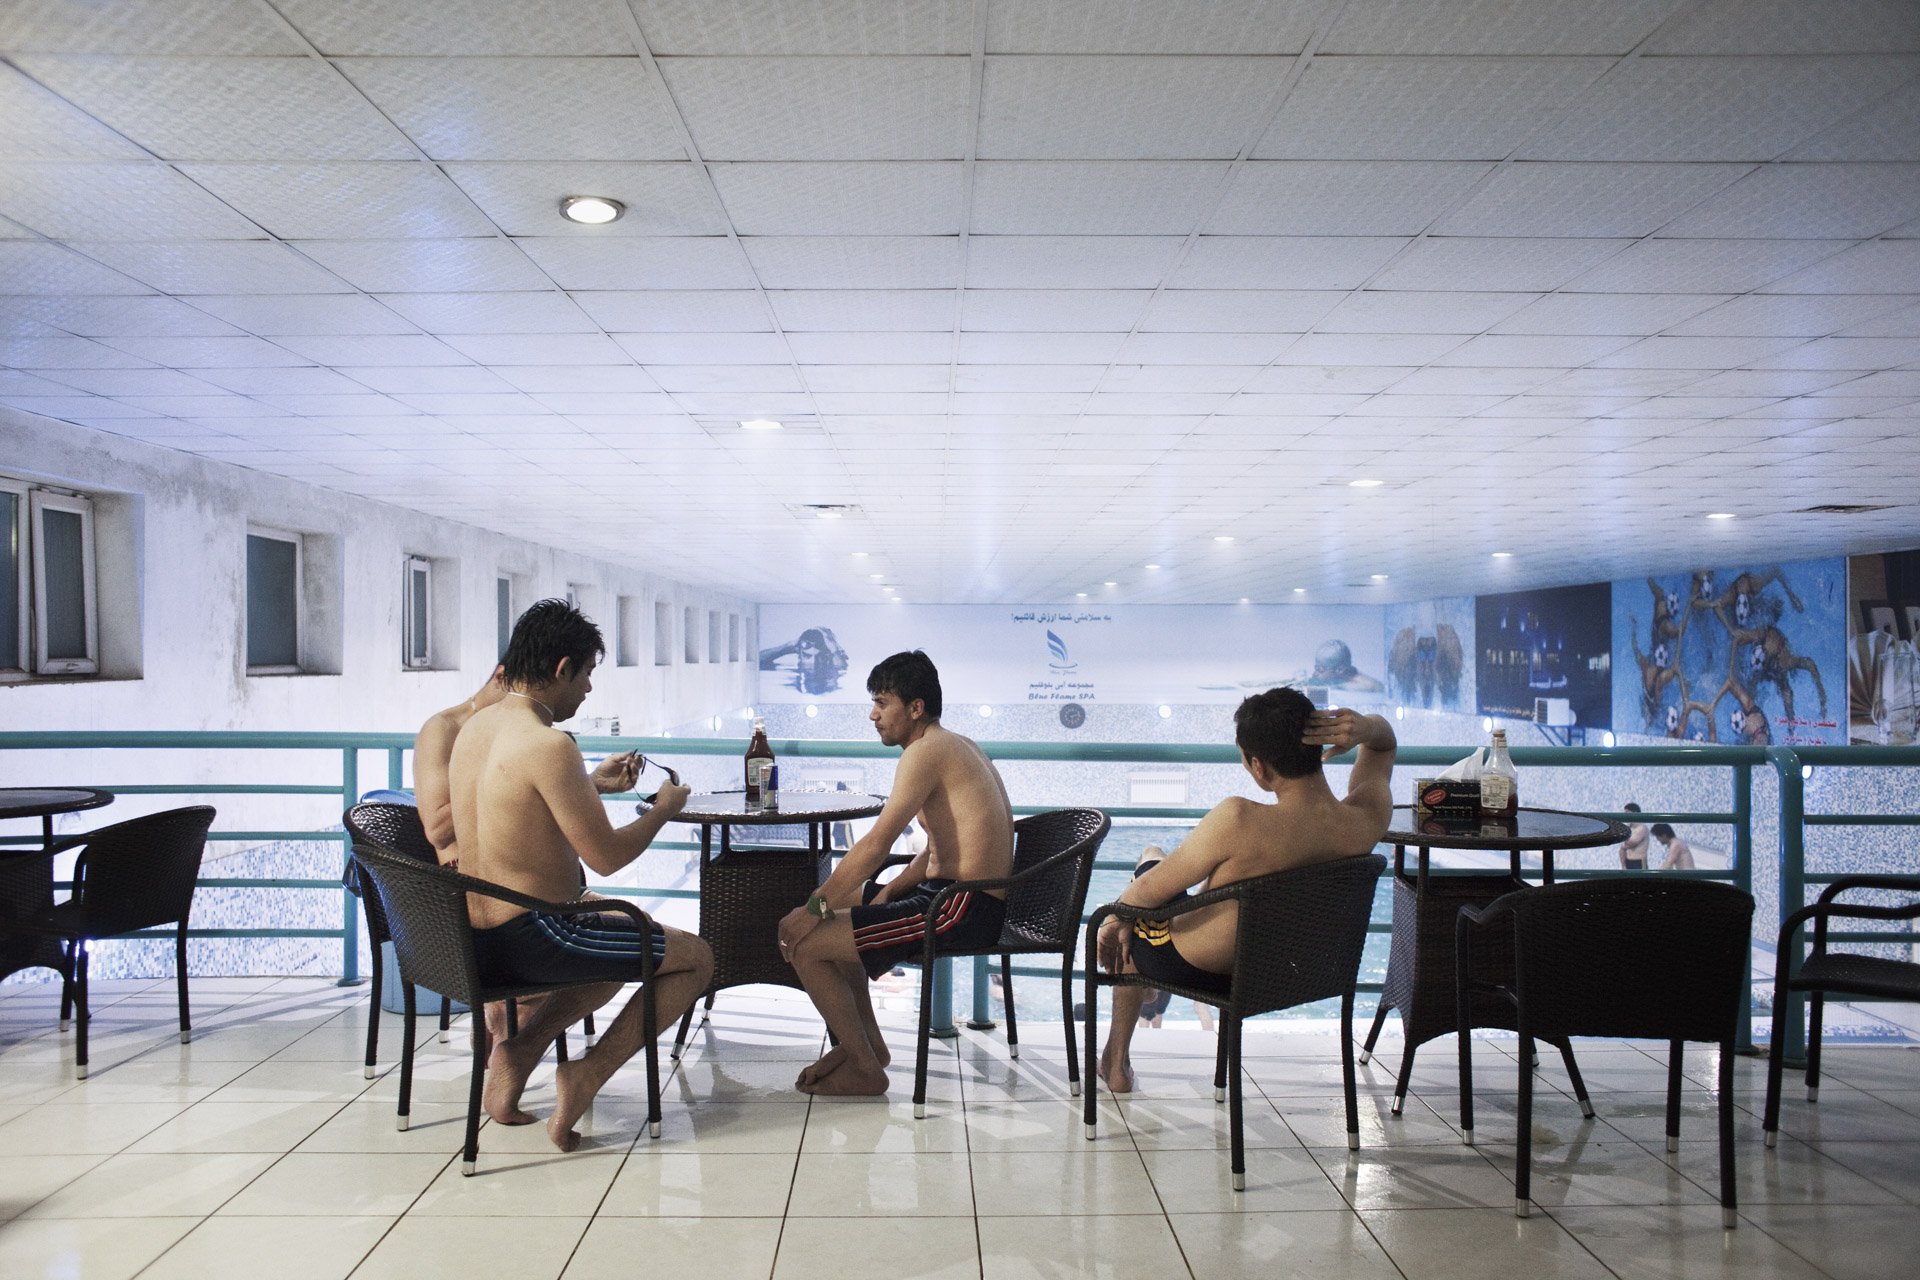  Le Blue Flame, nouvelle piscine avec spa de Kaboul, réservée aux classes moyennes et supérieures : l’accès au spa coûte l’équivalent de 15 dollars, quand le salaire moyen en Afghanistan reste de 100 dollars par mois.En 2013, 3 autres picines-spa ont